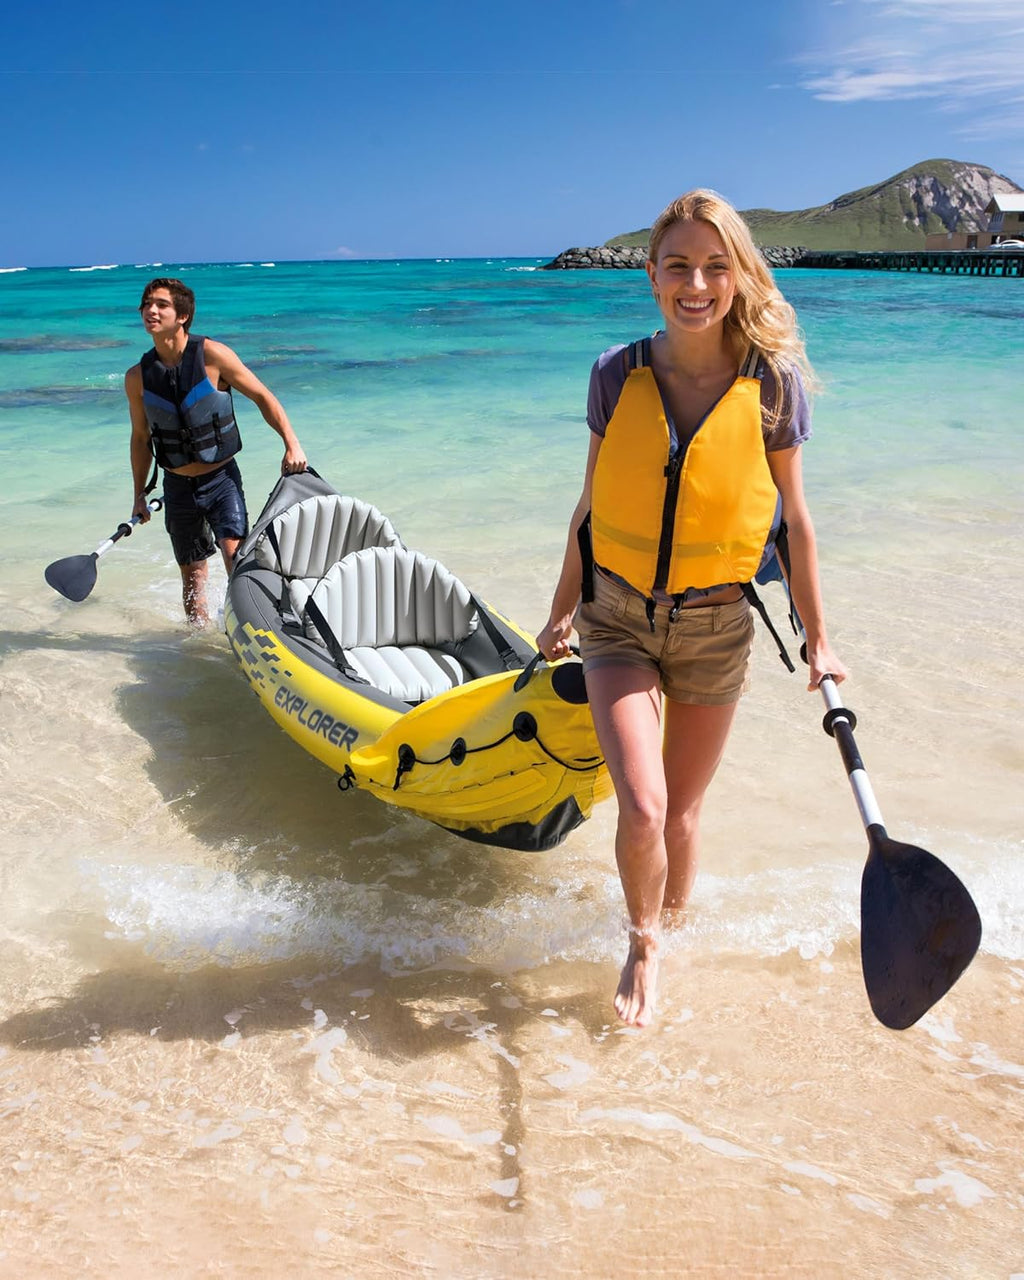 Intex Ensemble de 2 Places Explorer K2 Kayak, Kayak Gonflable avec rames en Aluminium et Pompe à air Haute Puissance - fitnessterapy